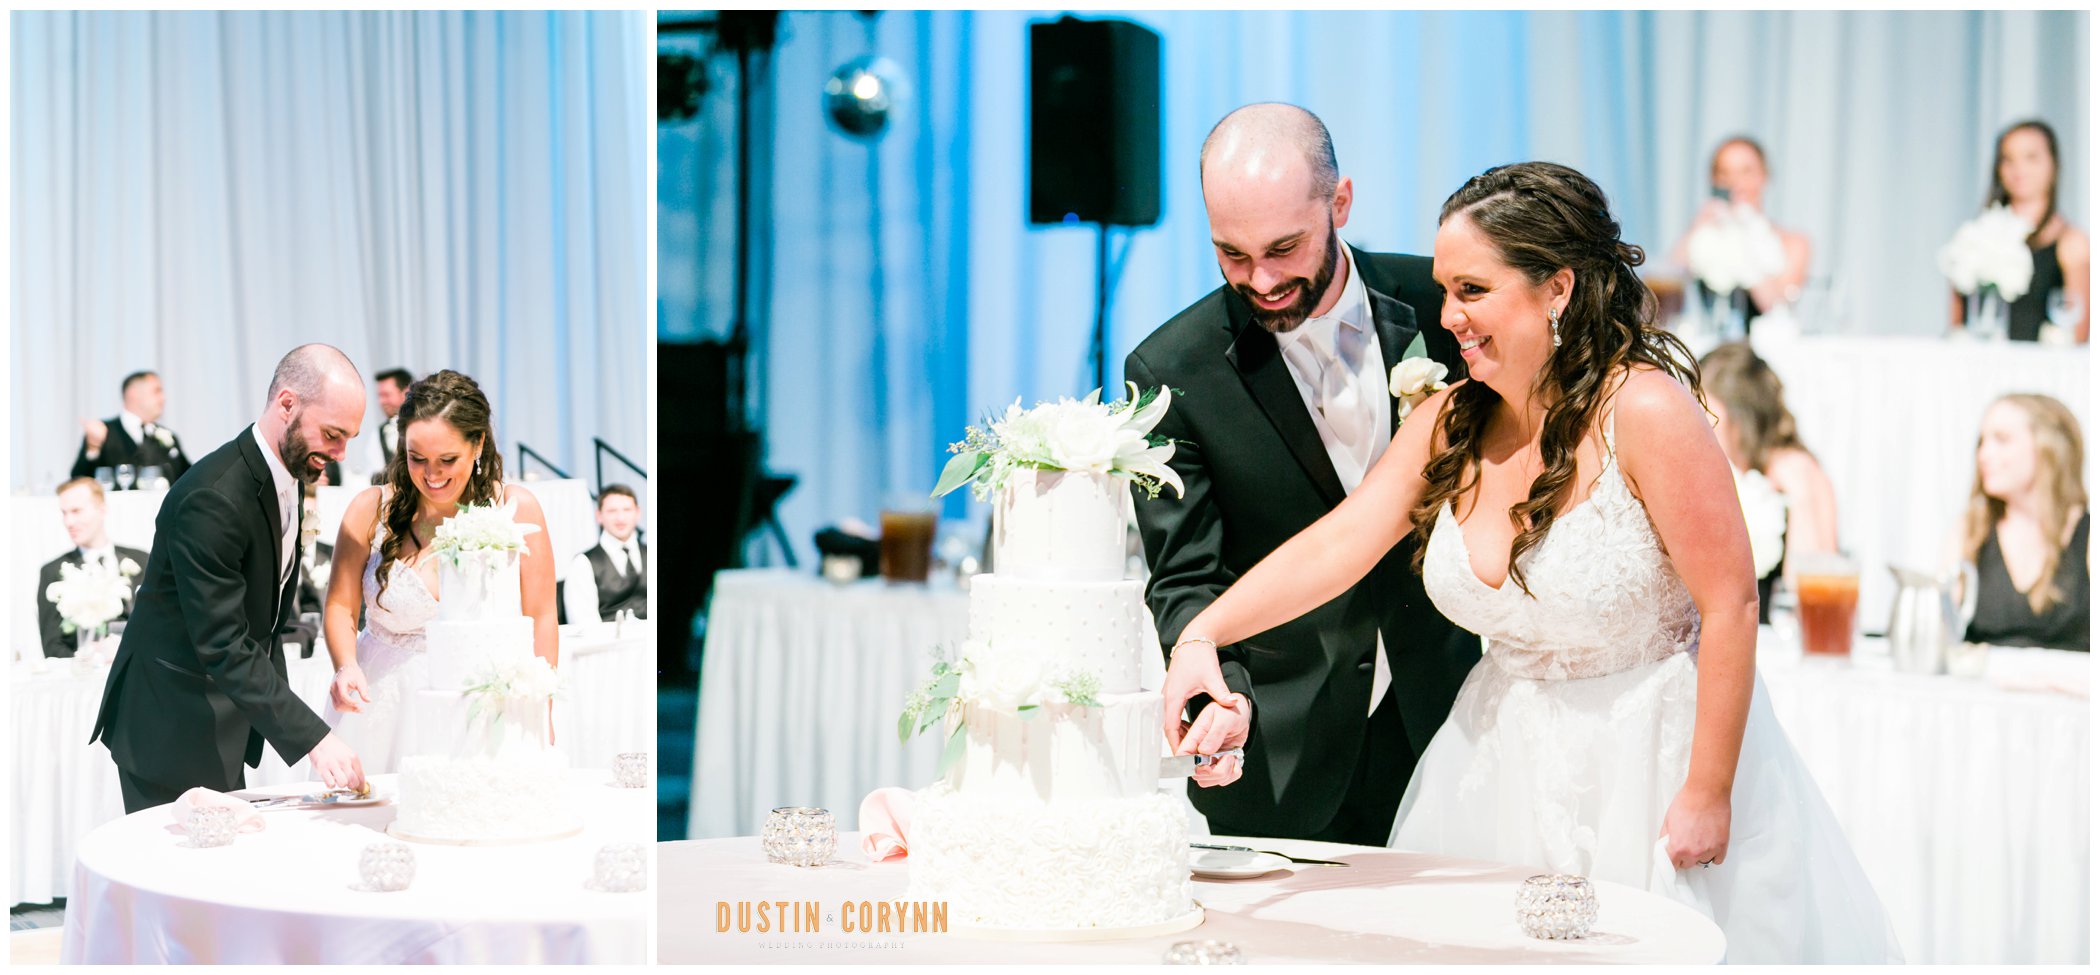 Cake Cutting at Wedding